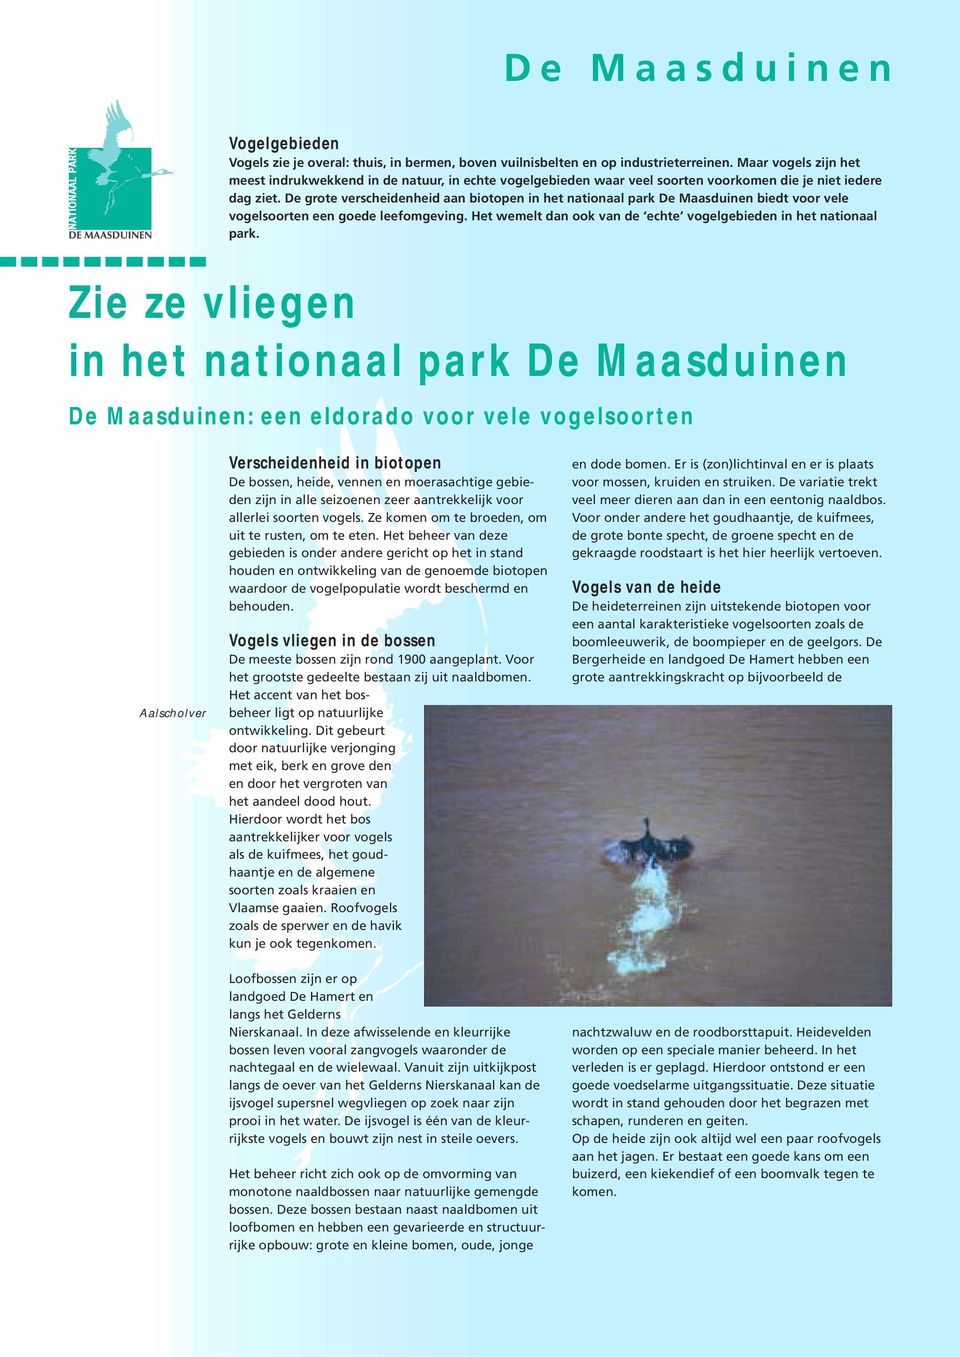 De grote verscheidenheid aan biotopen in het nationaal park De Maasduinen biedt voor vele vogelsoorten een goede leefomgeving. Het wemelt dan ook van de echte vogelgebieden in het nationaal park.